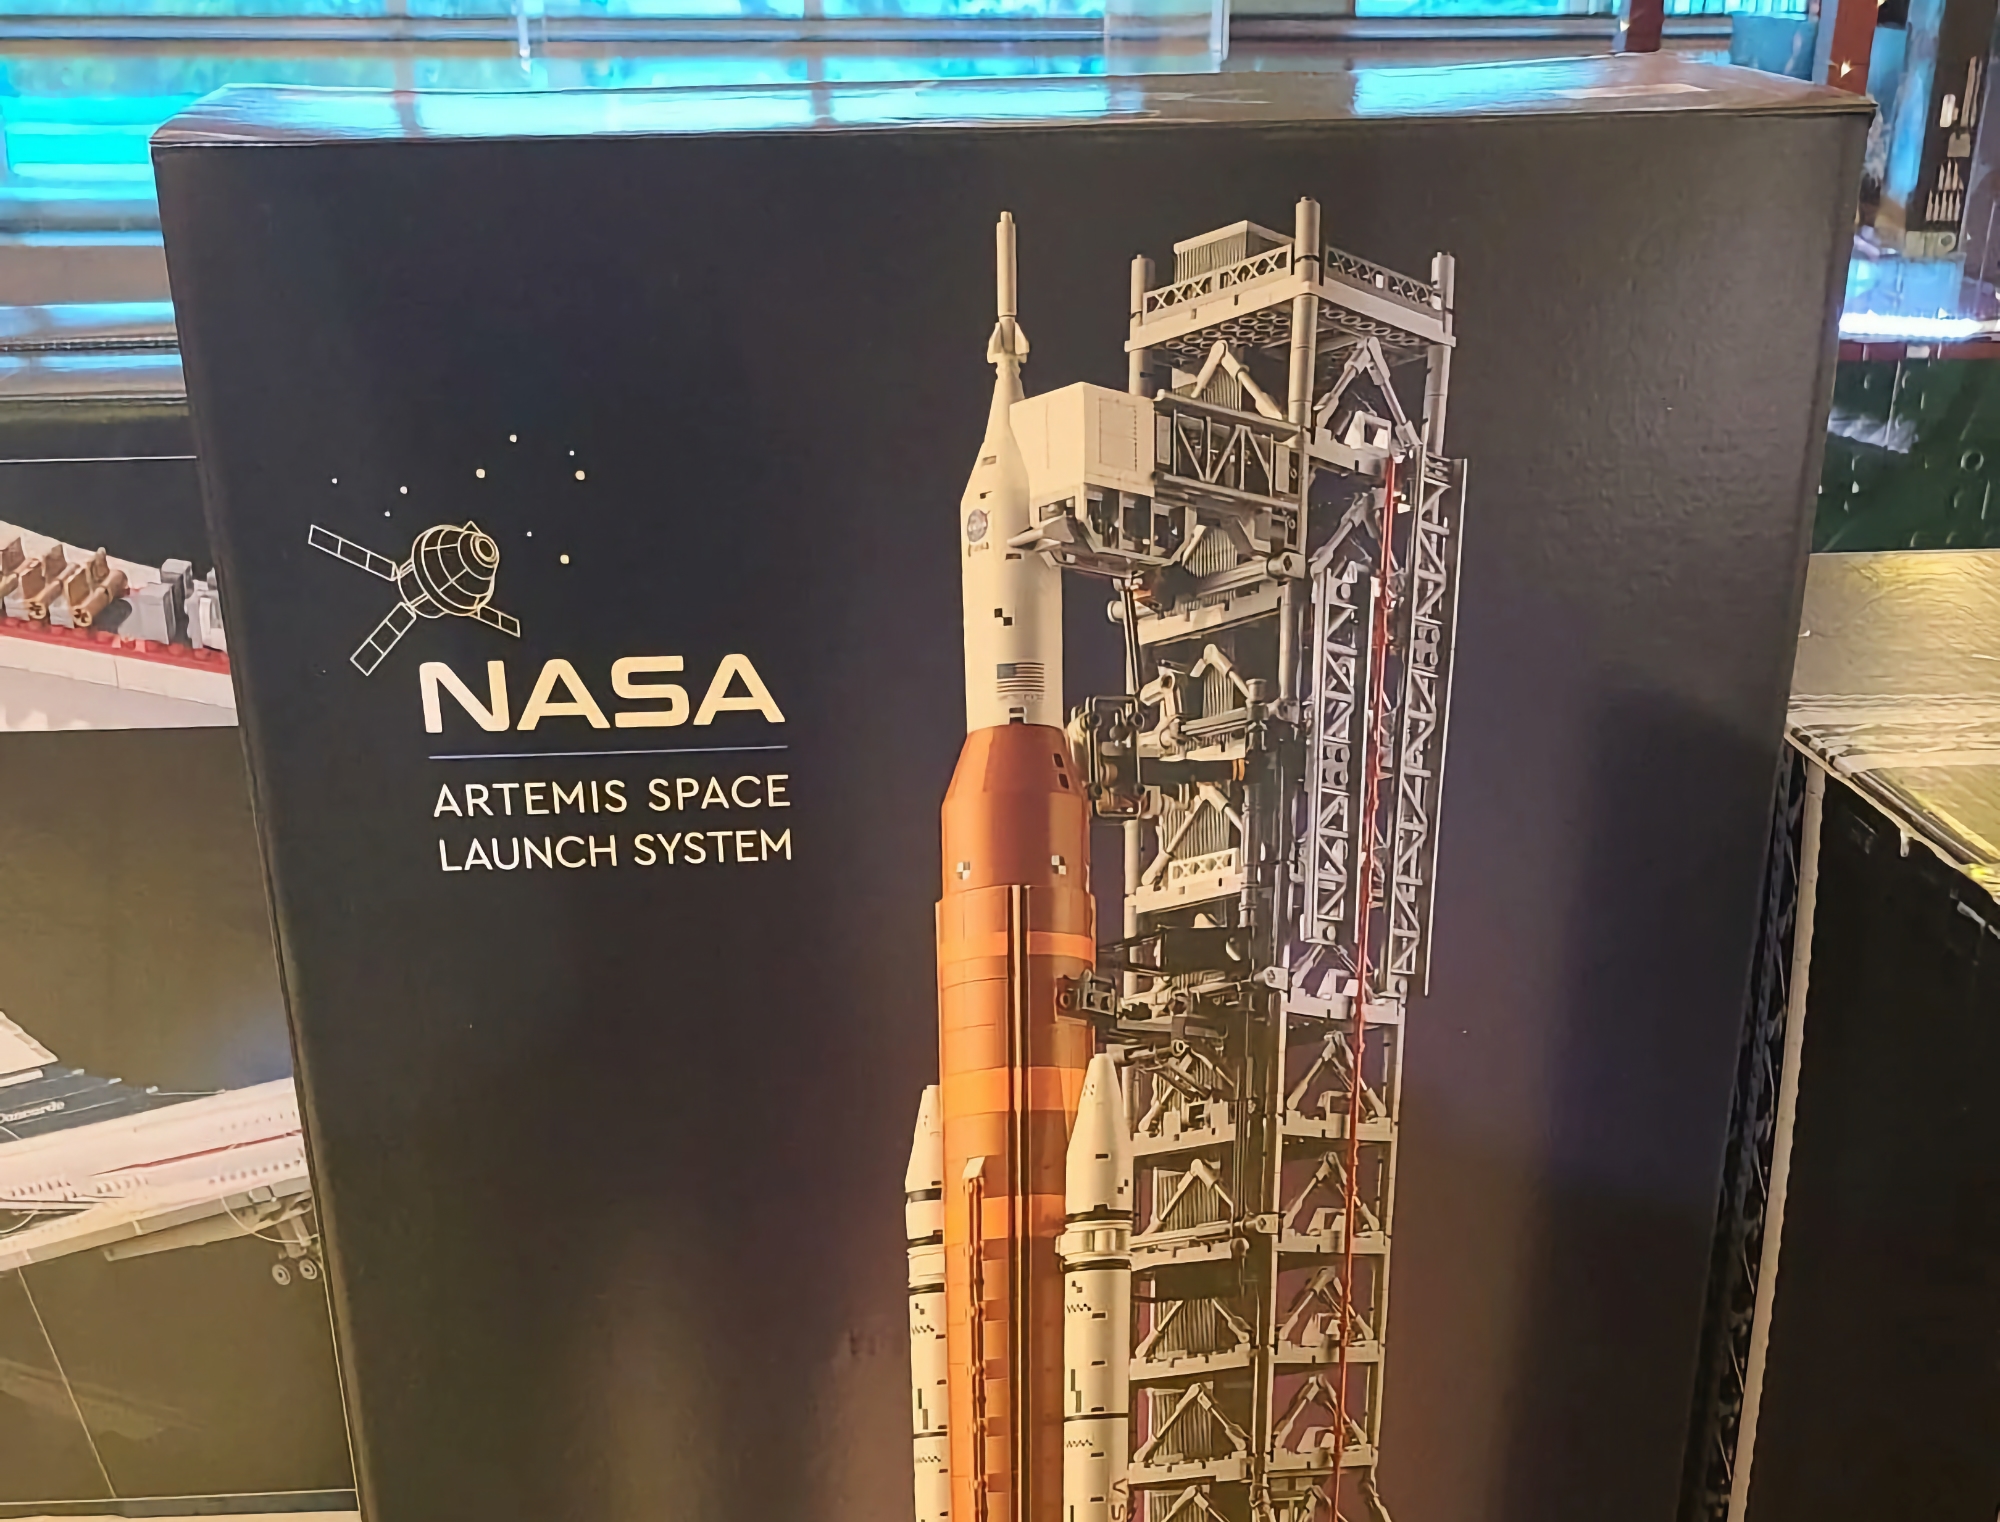 LEGO przygotowuje się do wydania zestawu NASA Artemis Space Launch System, który będzie składał się z 3601 części.